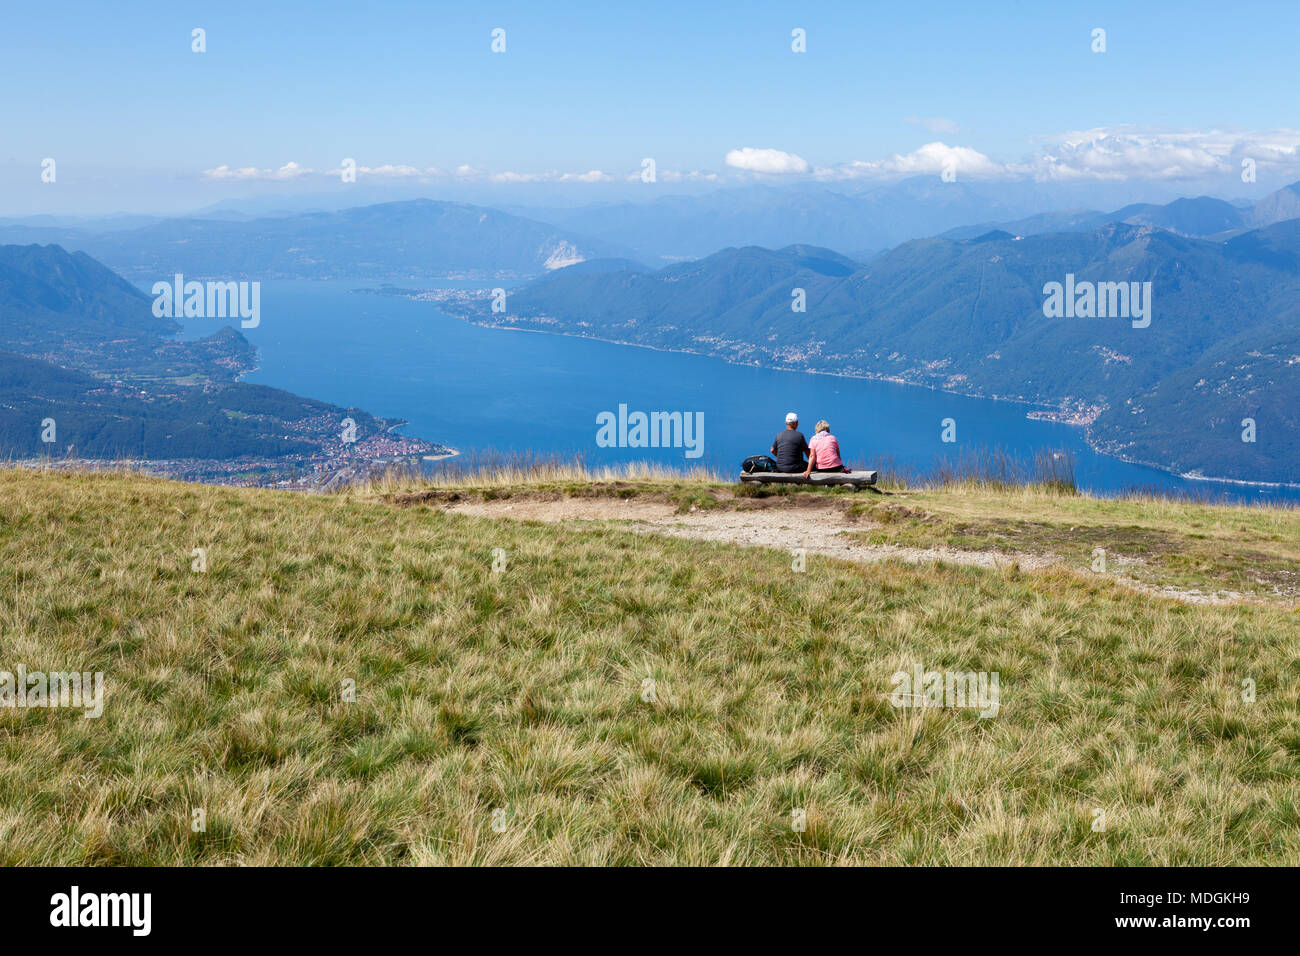 Due turisti contemplando la splendida vista del Lago Maggiore dalla sommità del Monte Lema (Monte Lema). Veddasca, Italia Foto Stock